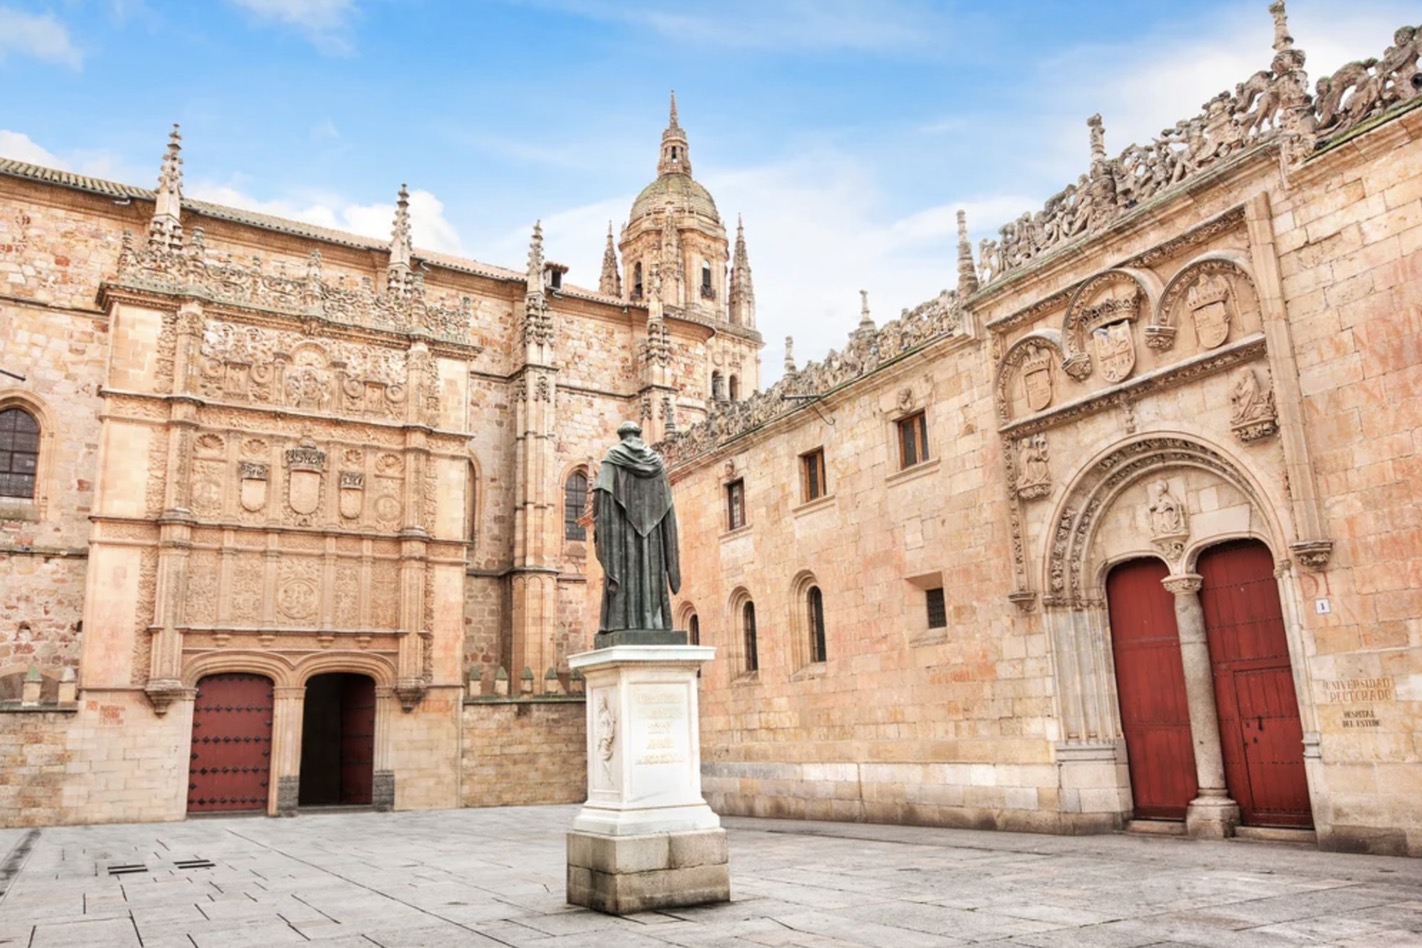 Salamanca is 